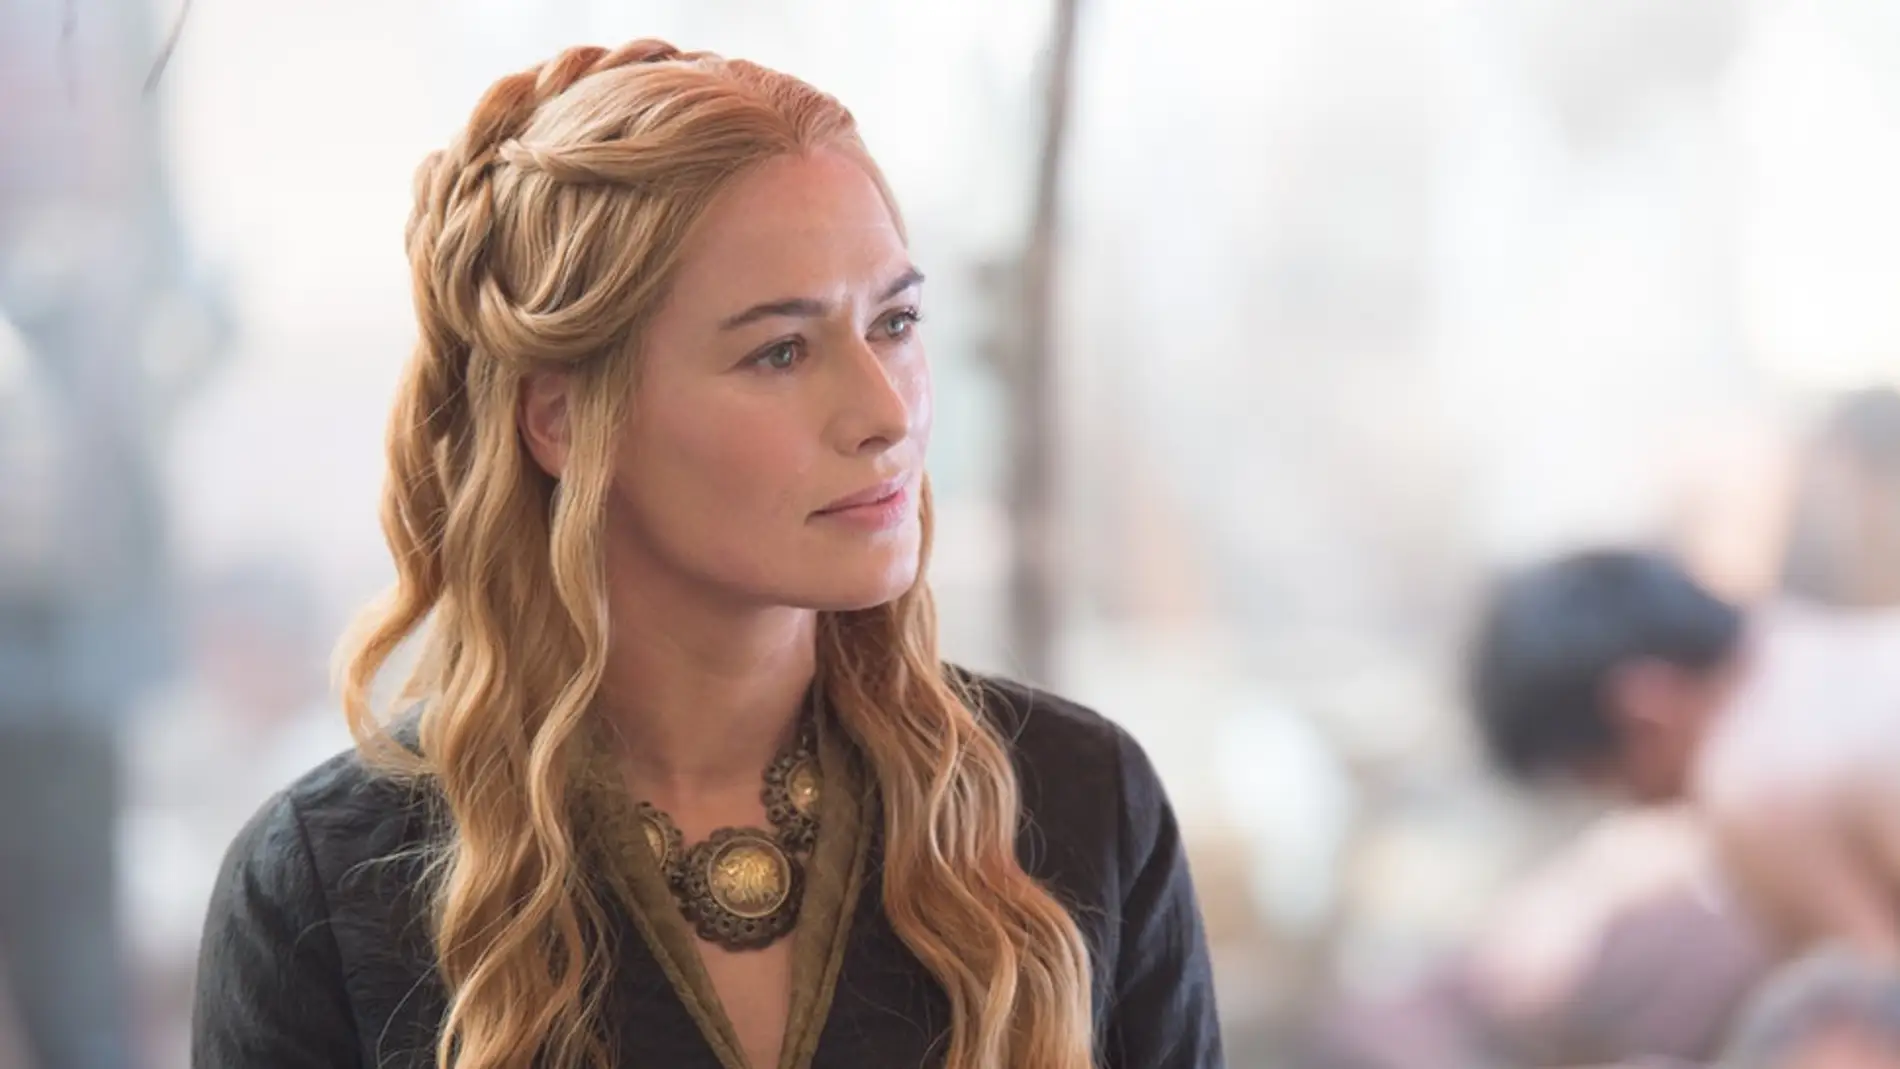 Las duras palabras de un periodista que humillaron a Lena Headey, Cersei  Lannister, en 'Juego de Tronos'